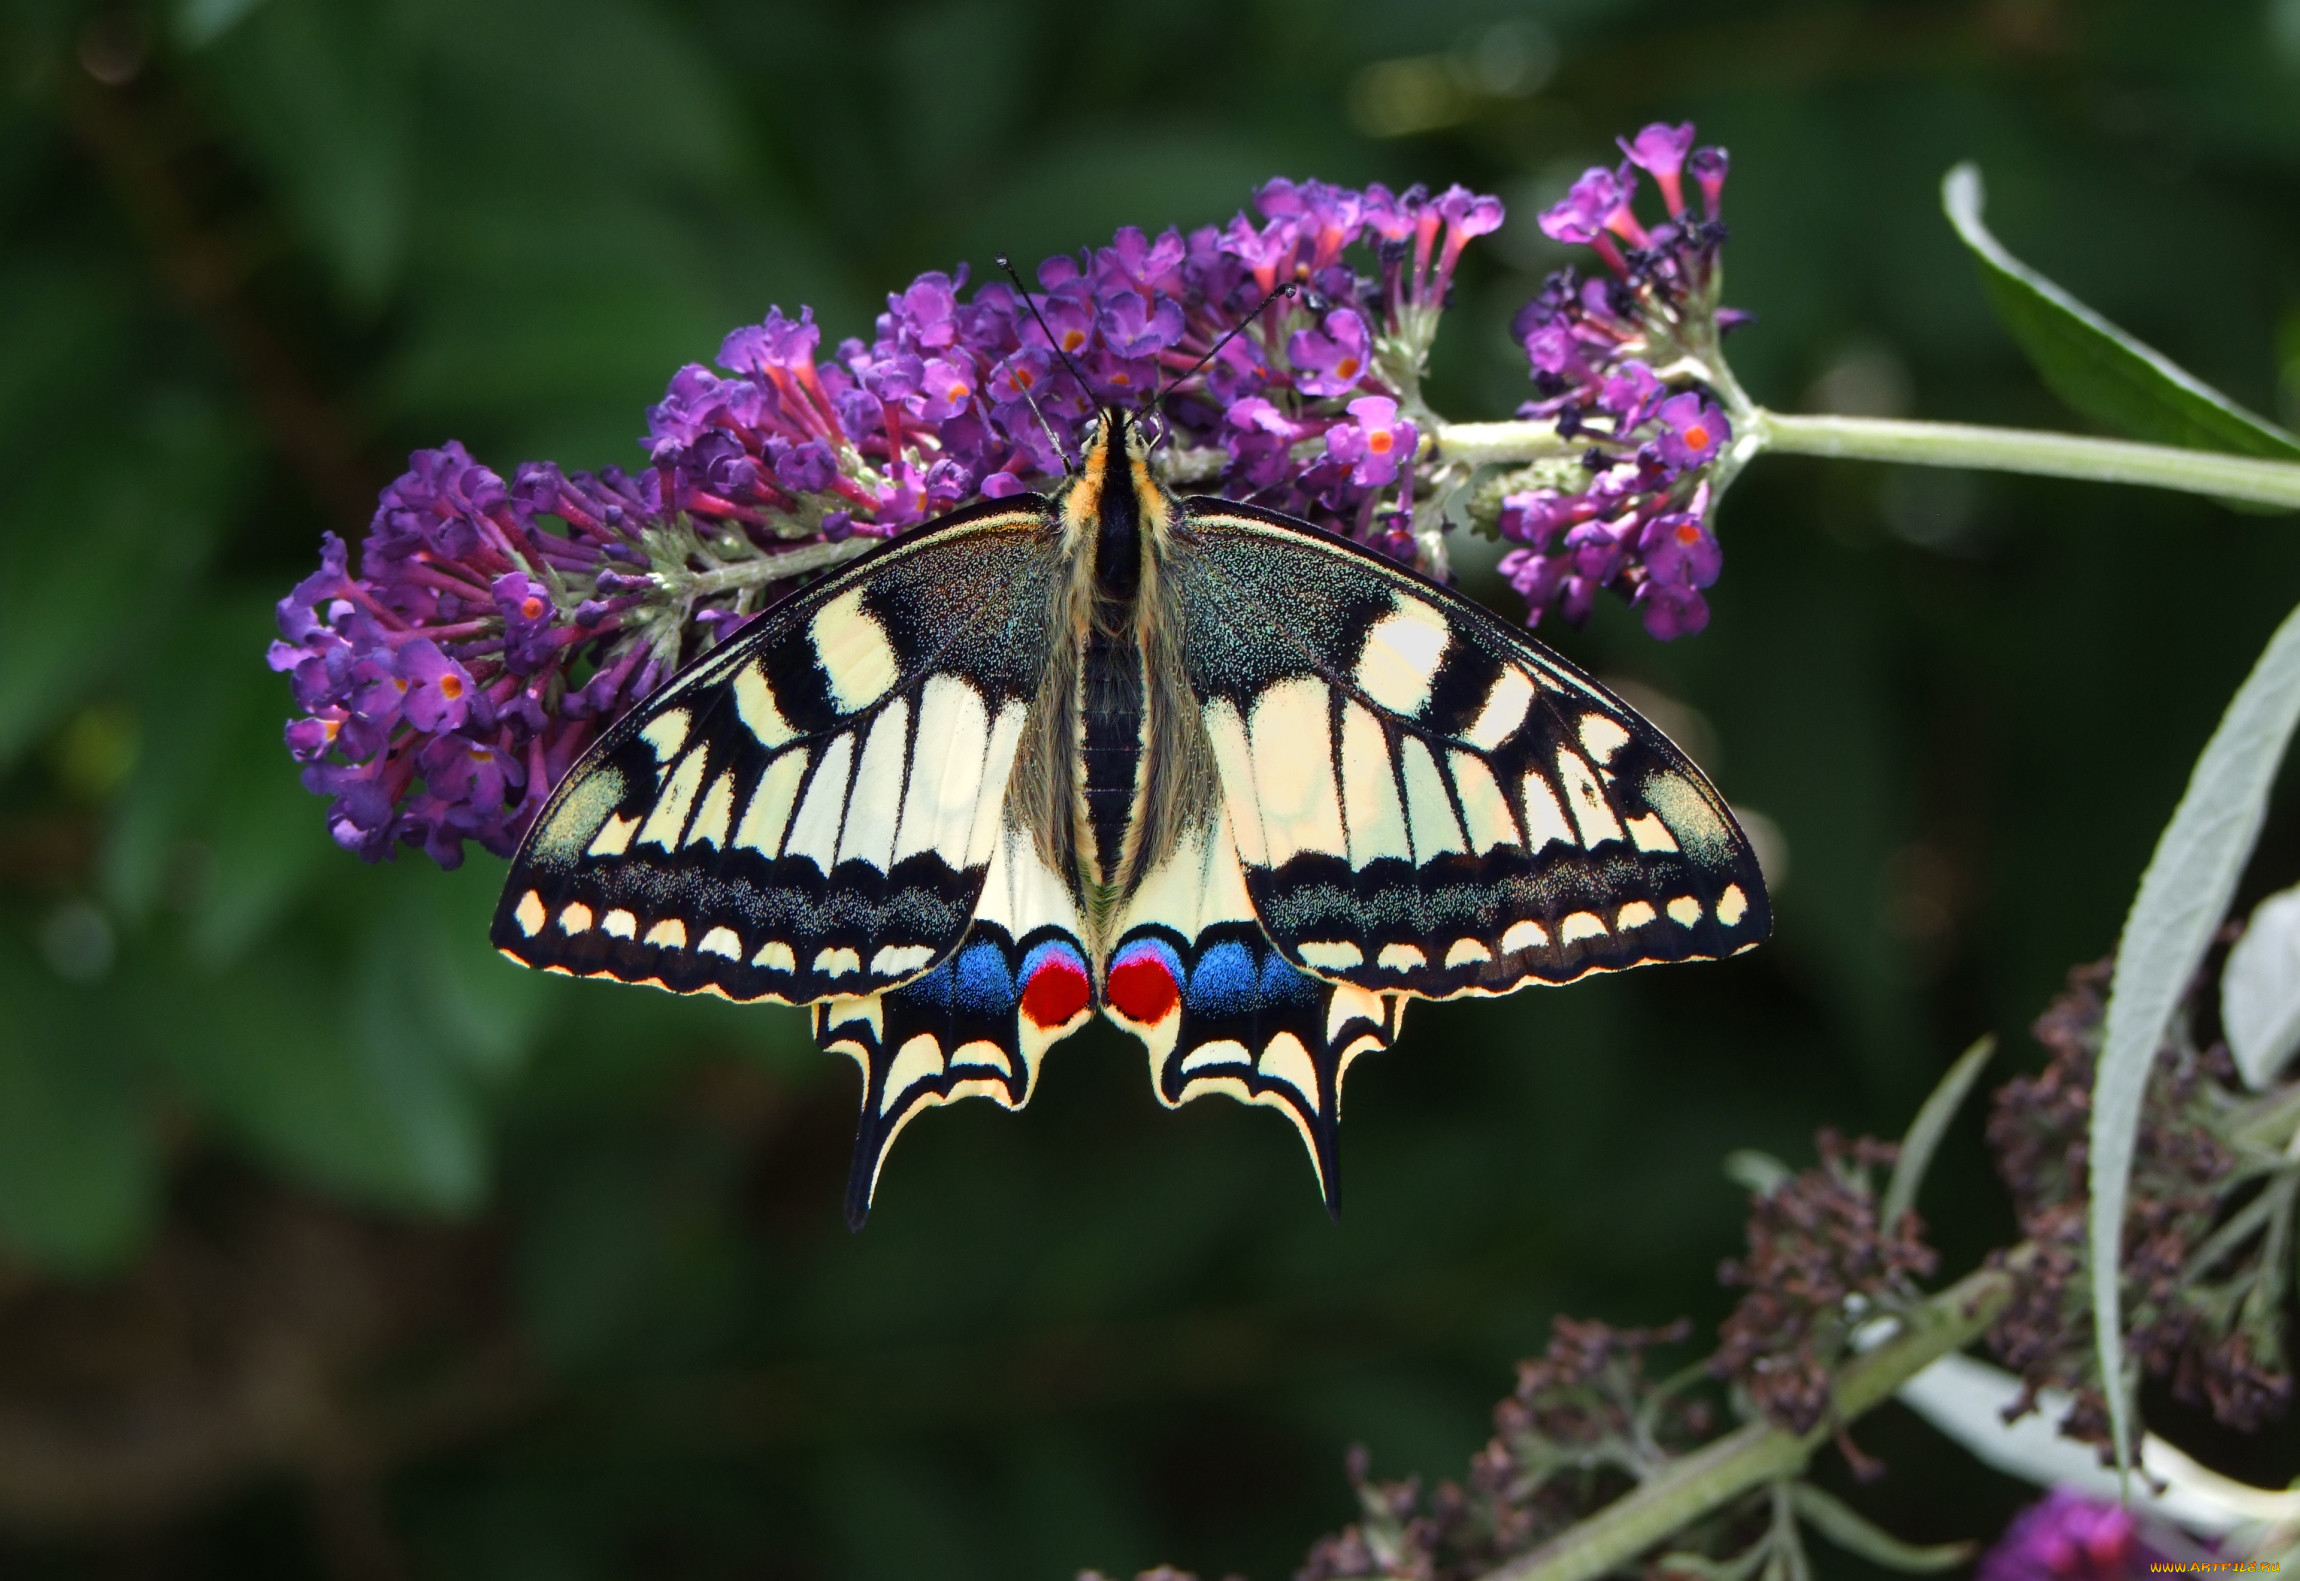 Цветы похожи на крылья бабочек